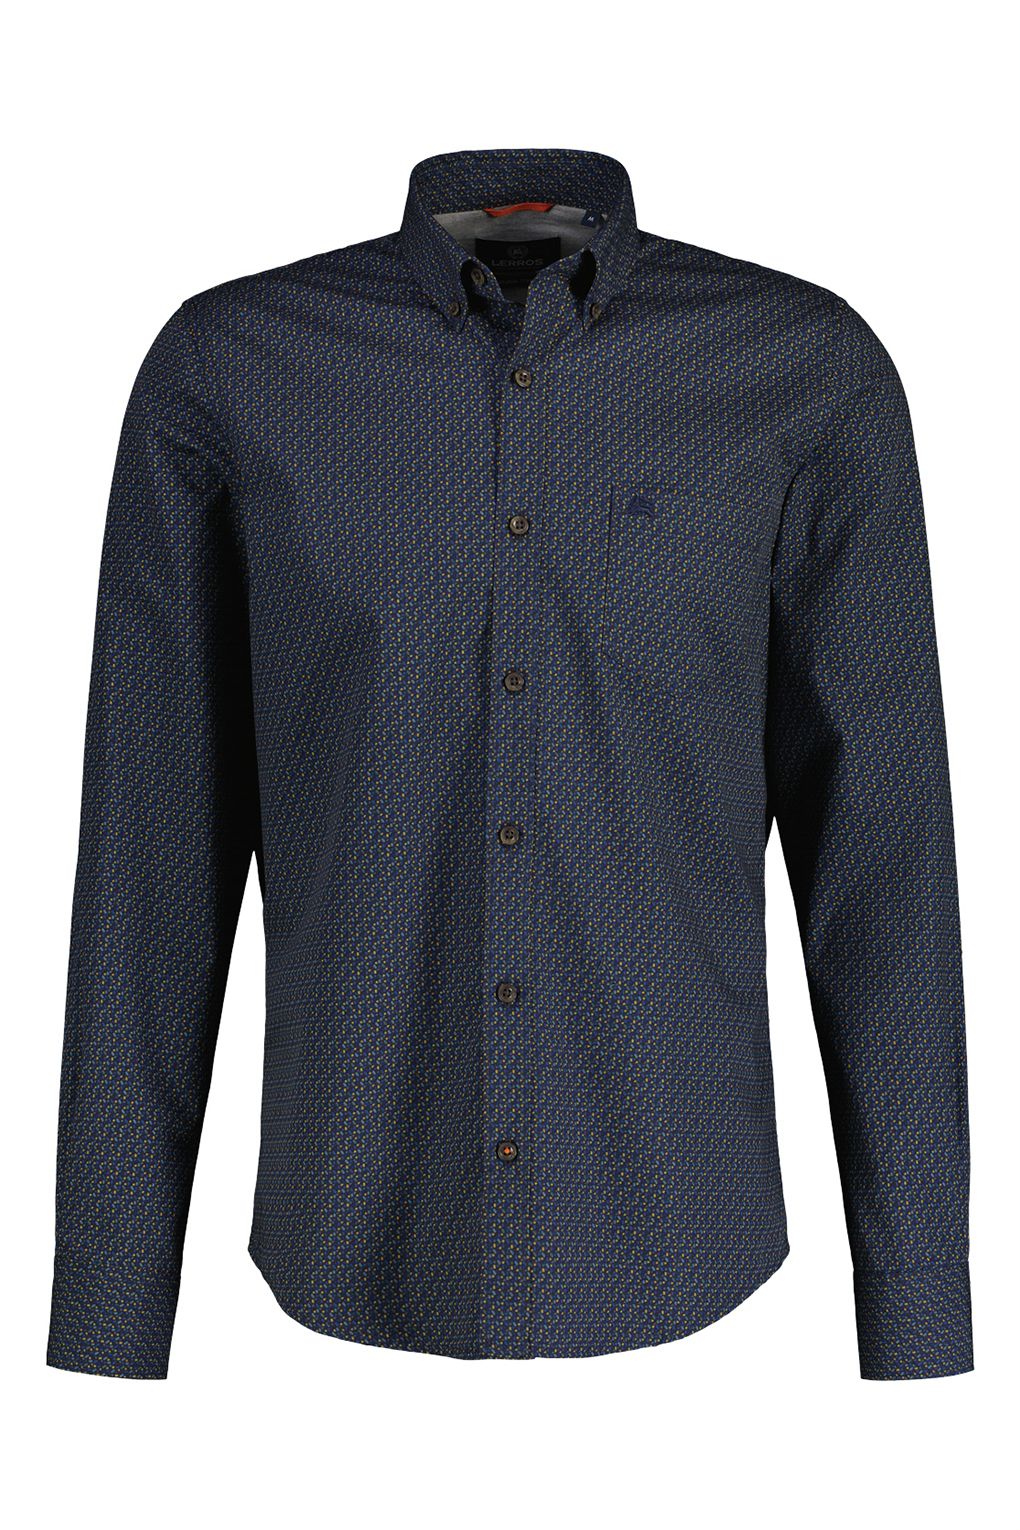 Рубашка мужская LERROS 22O1134 синяя XL